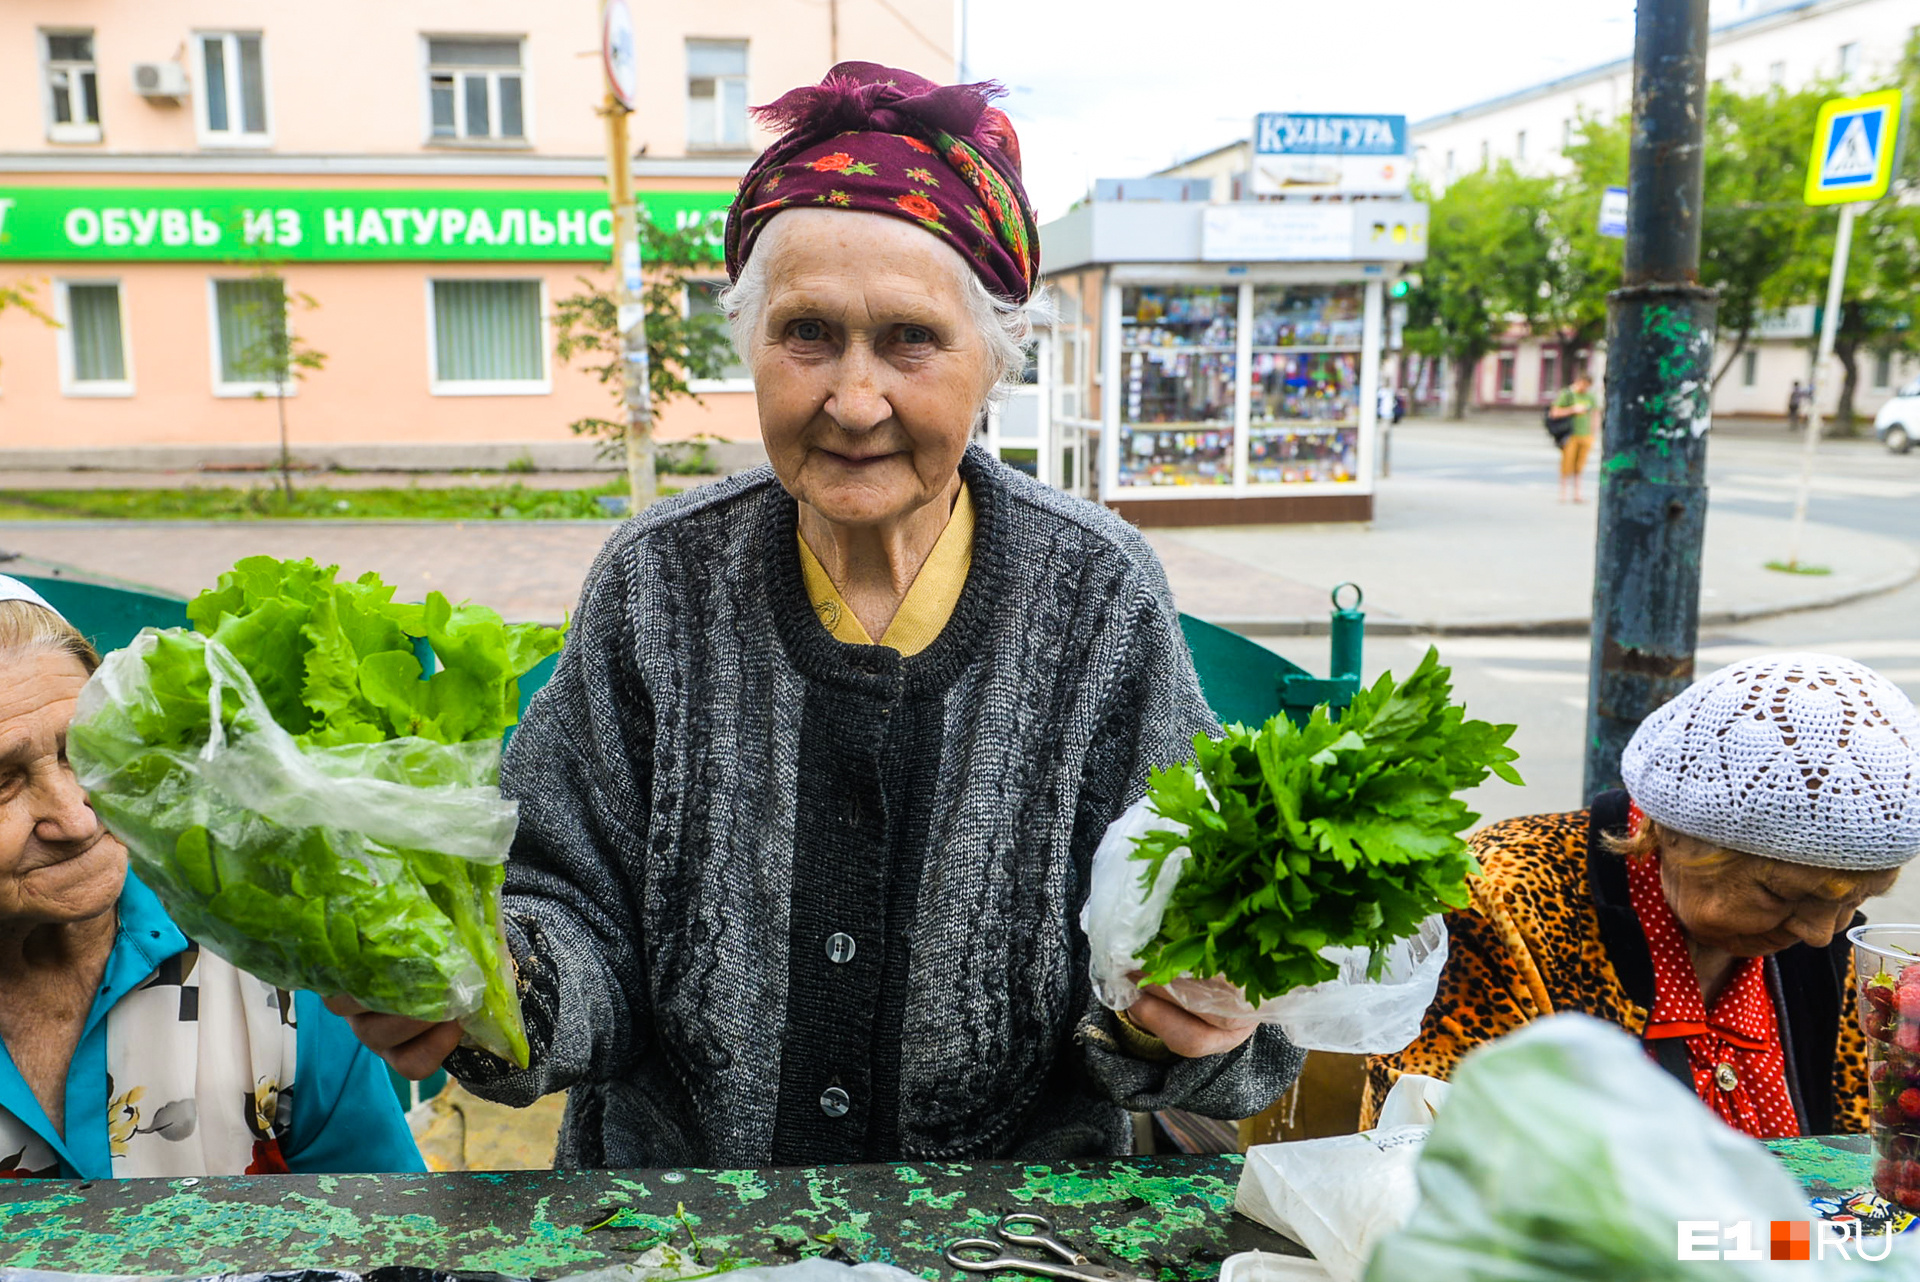 Галине Владимировне 84 года, ей торговля заменяет посиделки на лавочке (или соцсеть)